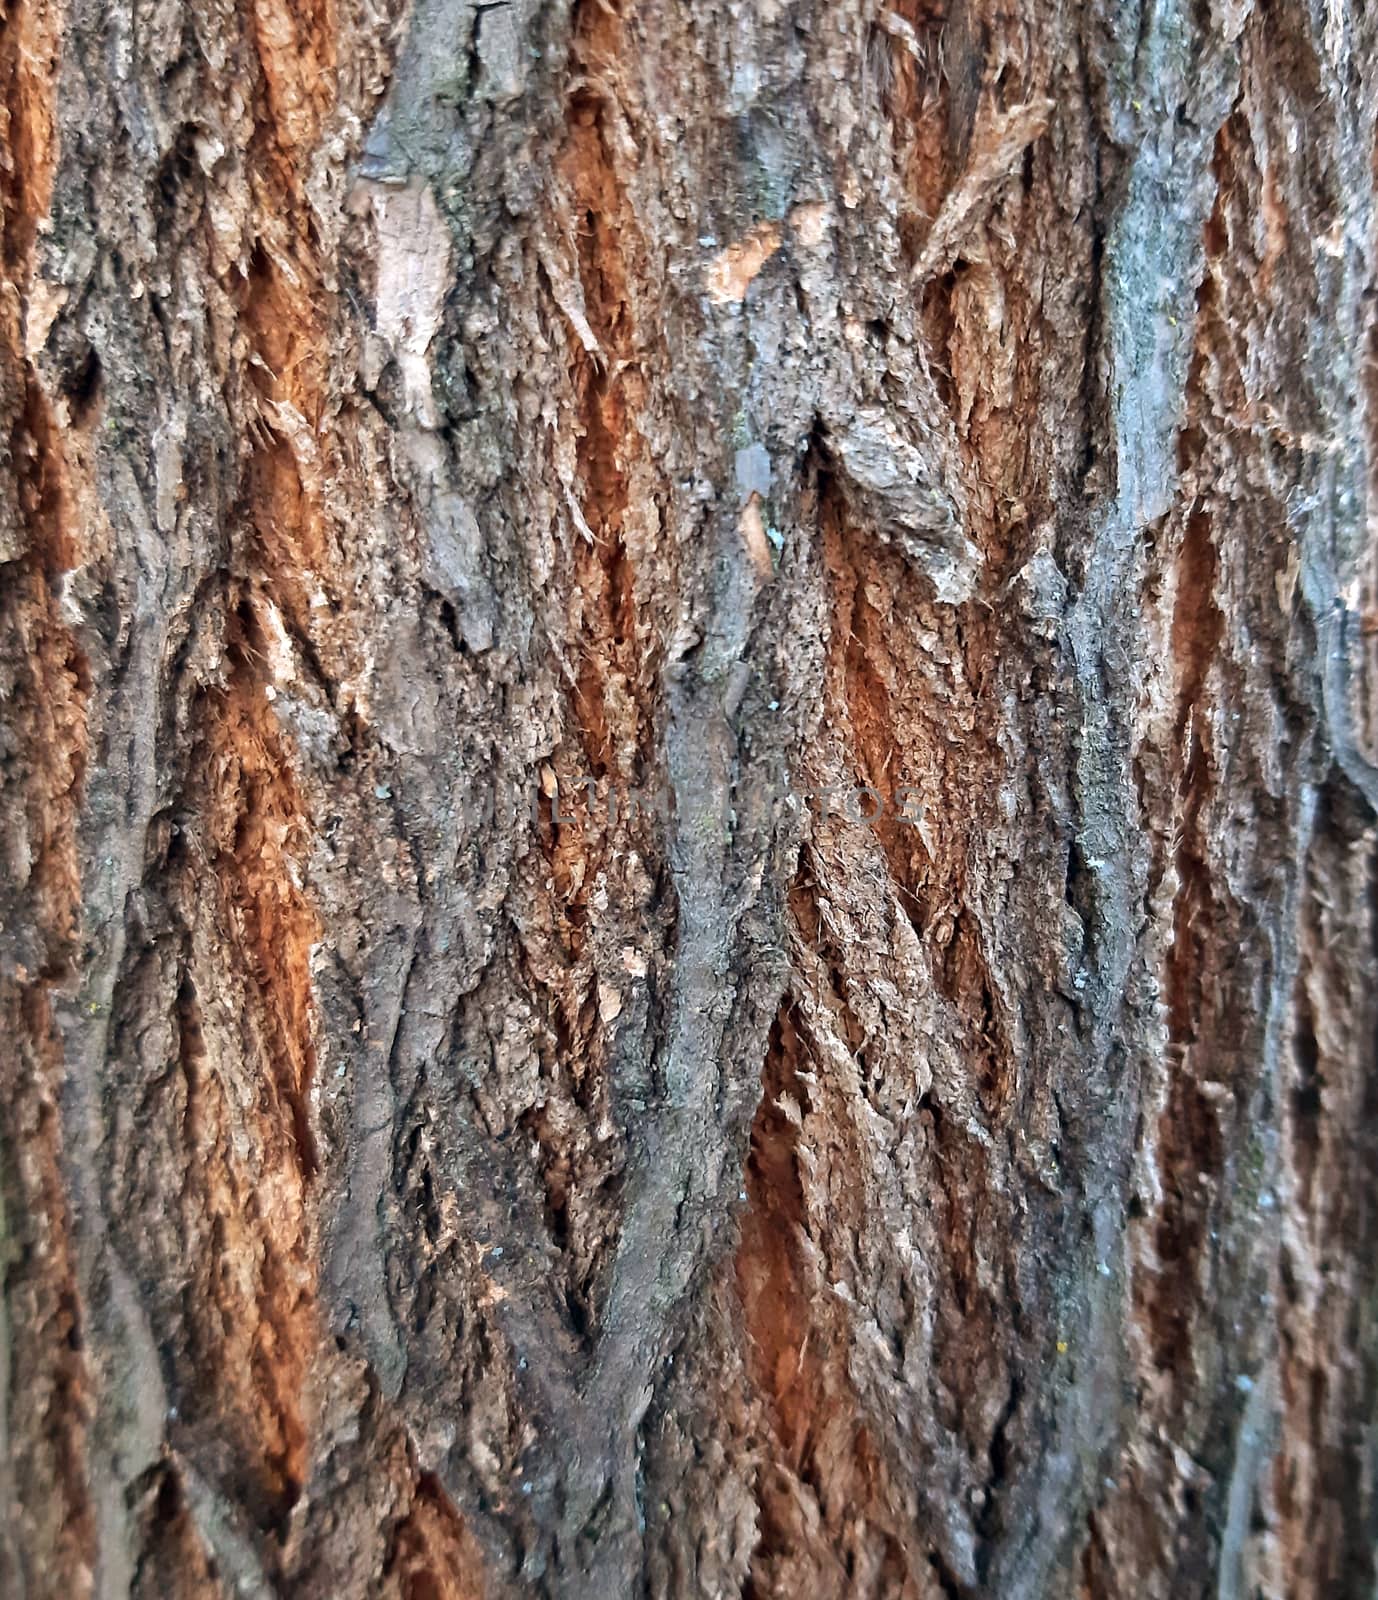 Acacia bark texture close up, young tree.